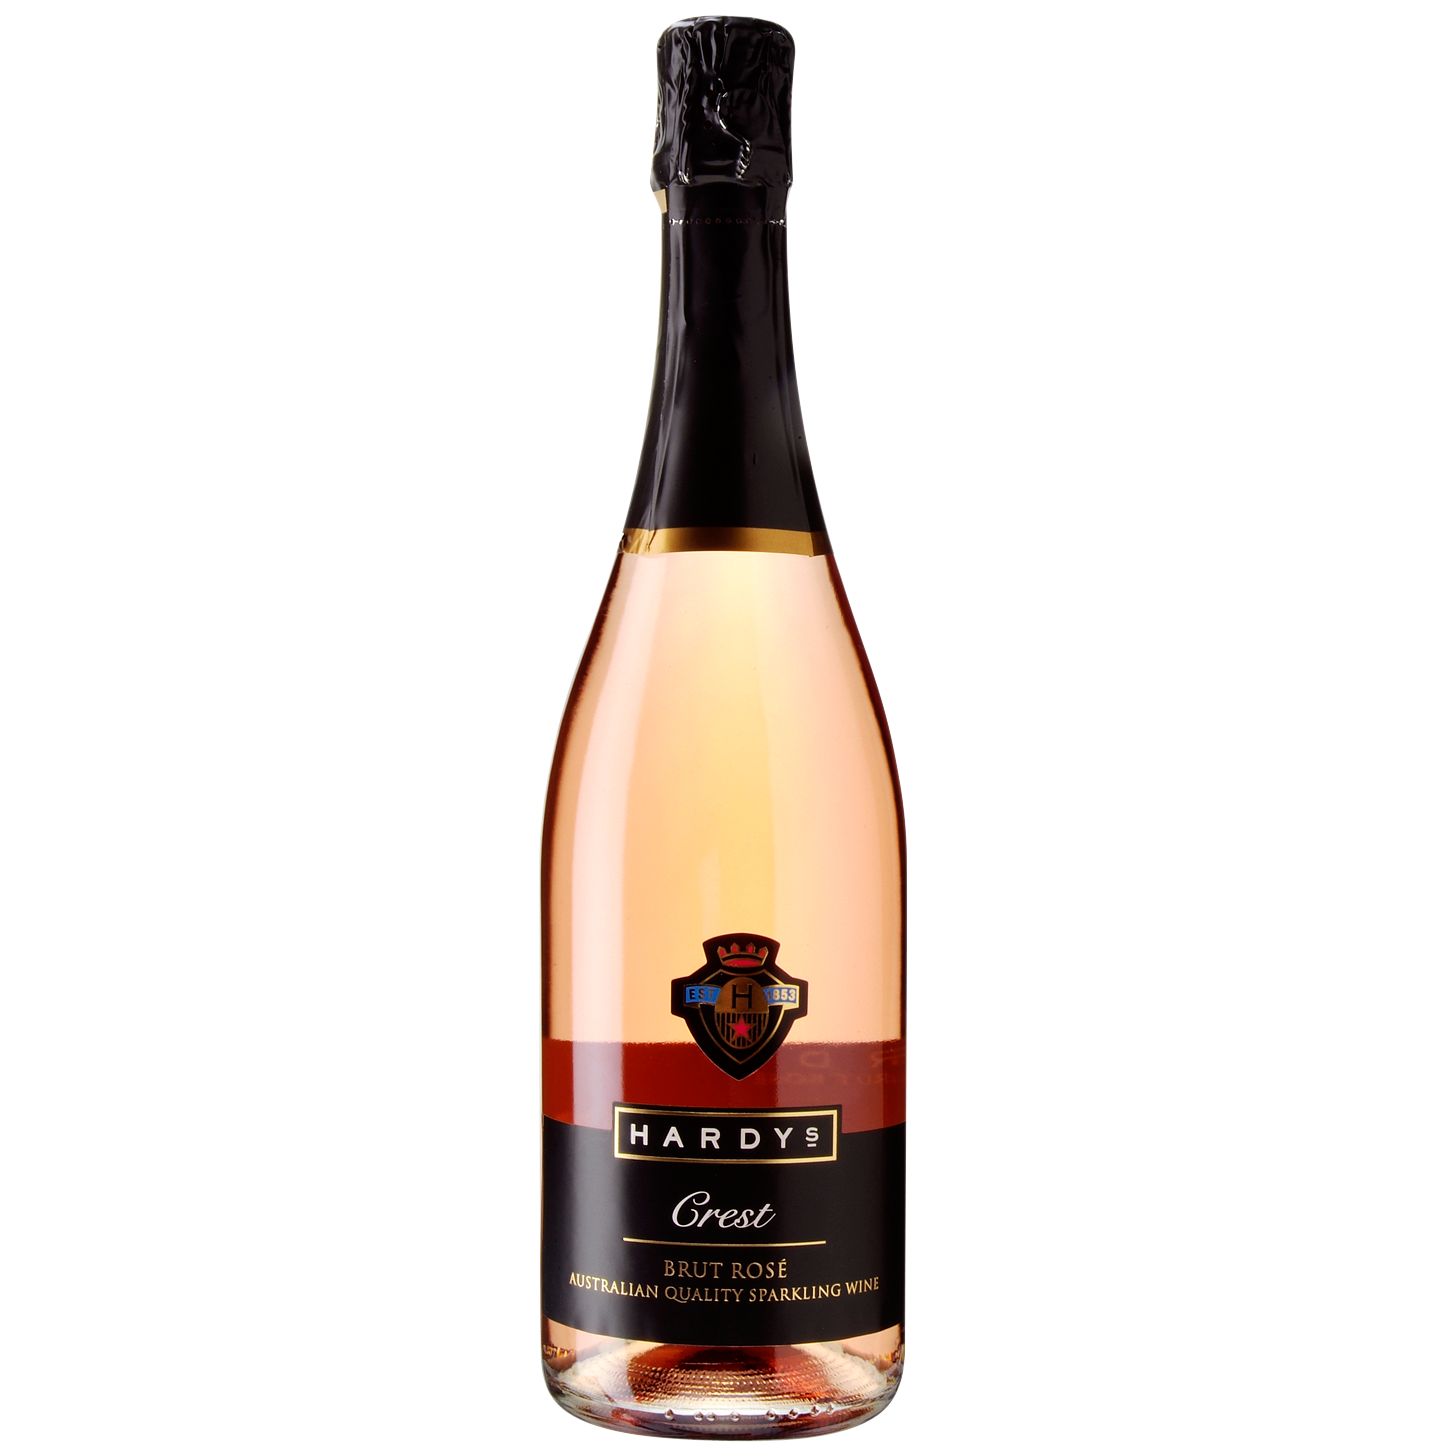 Hardys Crest Sparkling Rosé NV Australia, Sparkling Wine at John Lewis